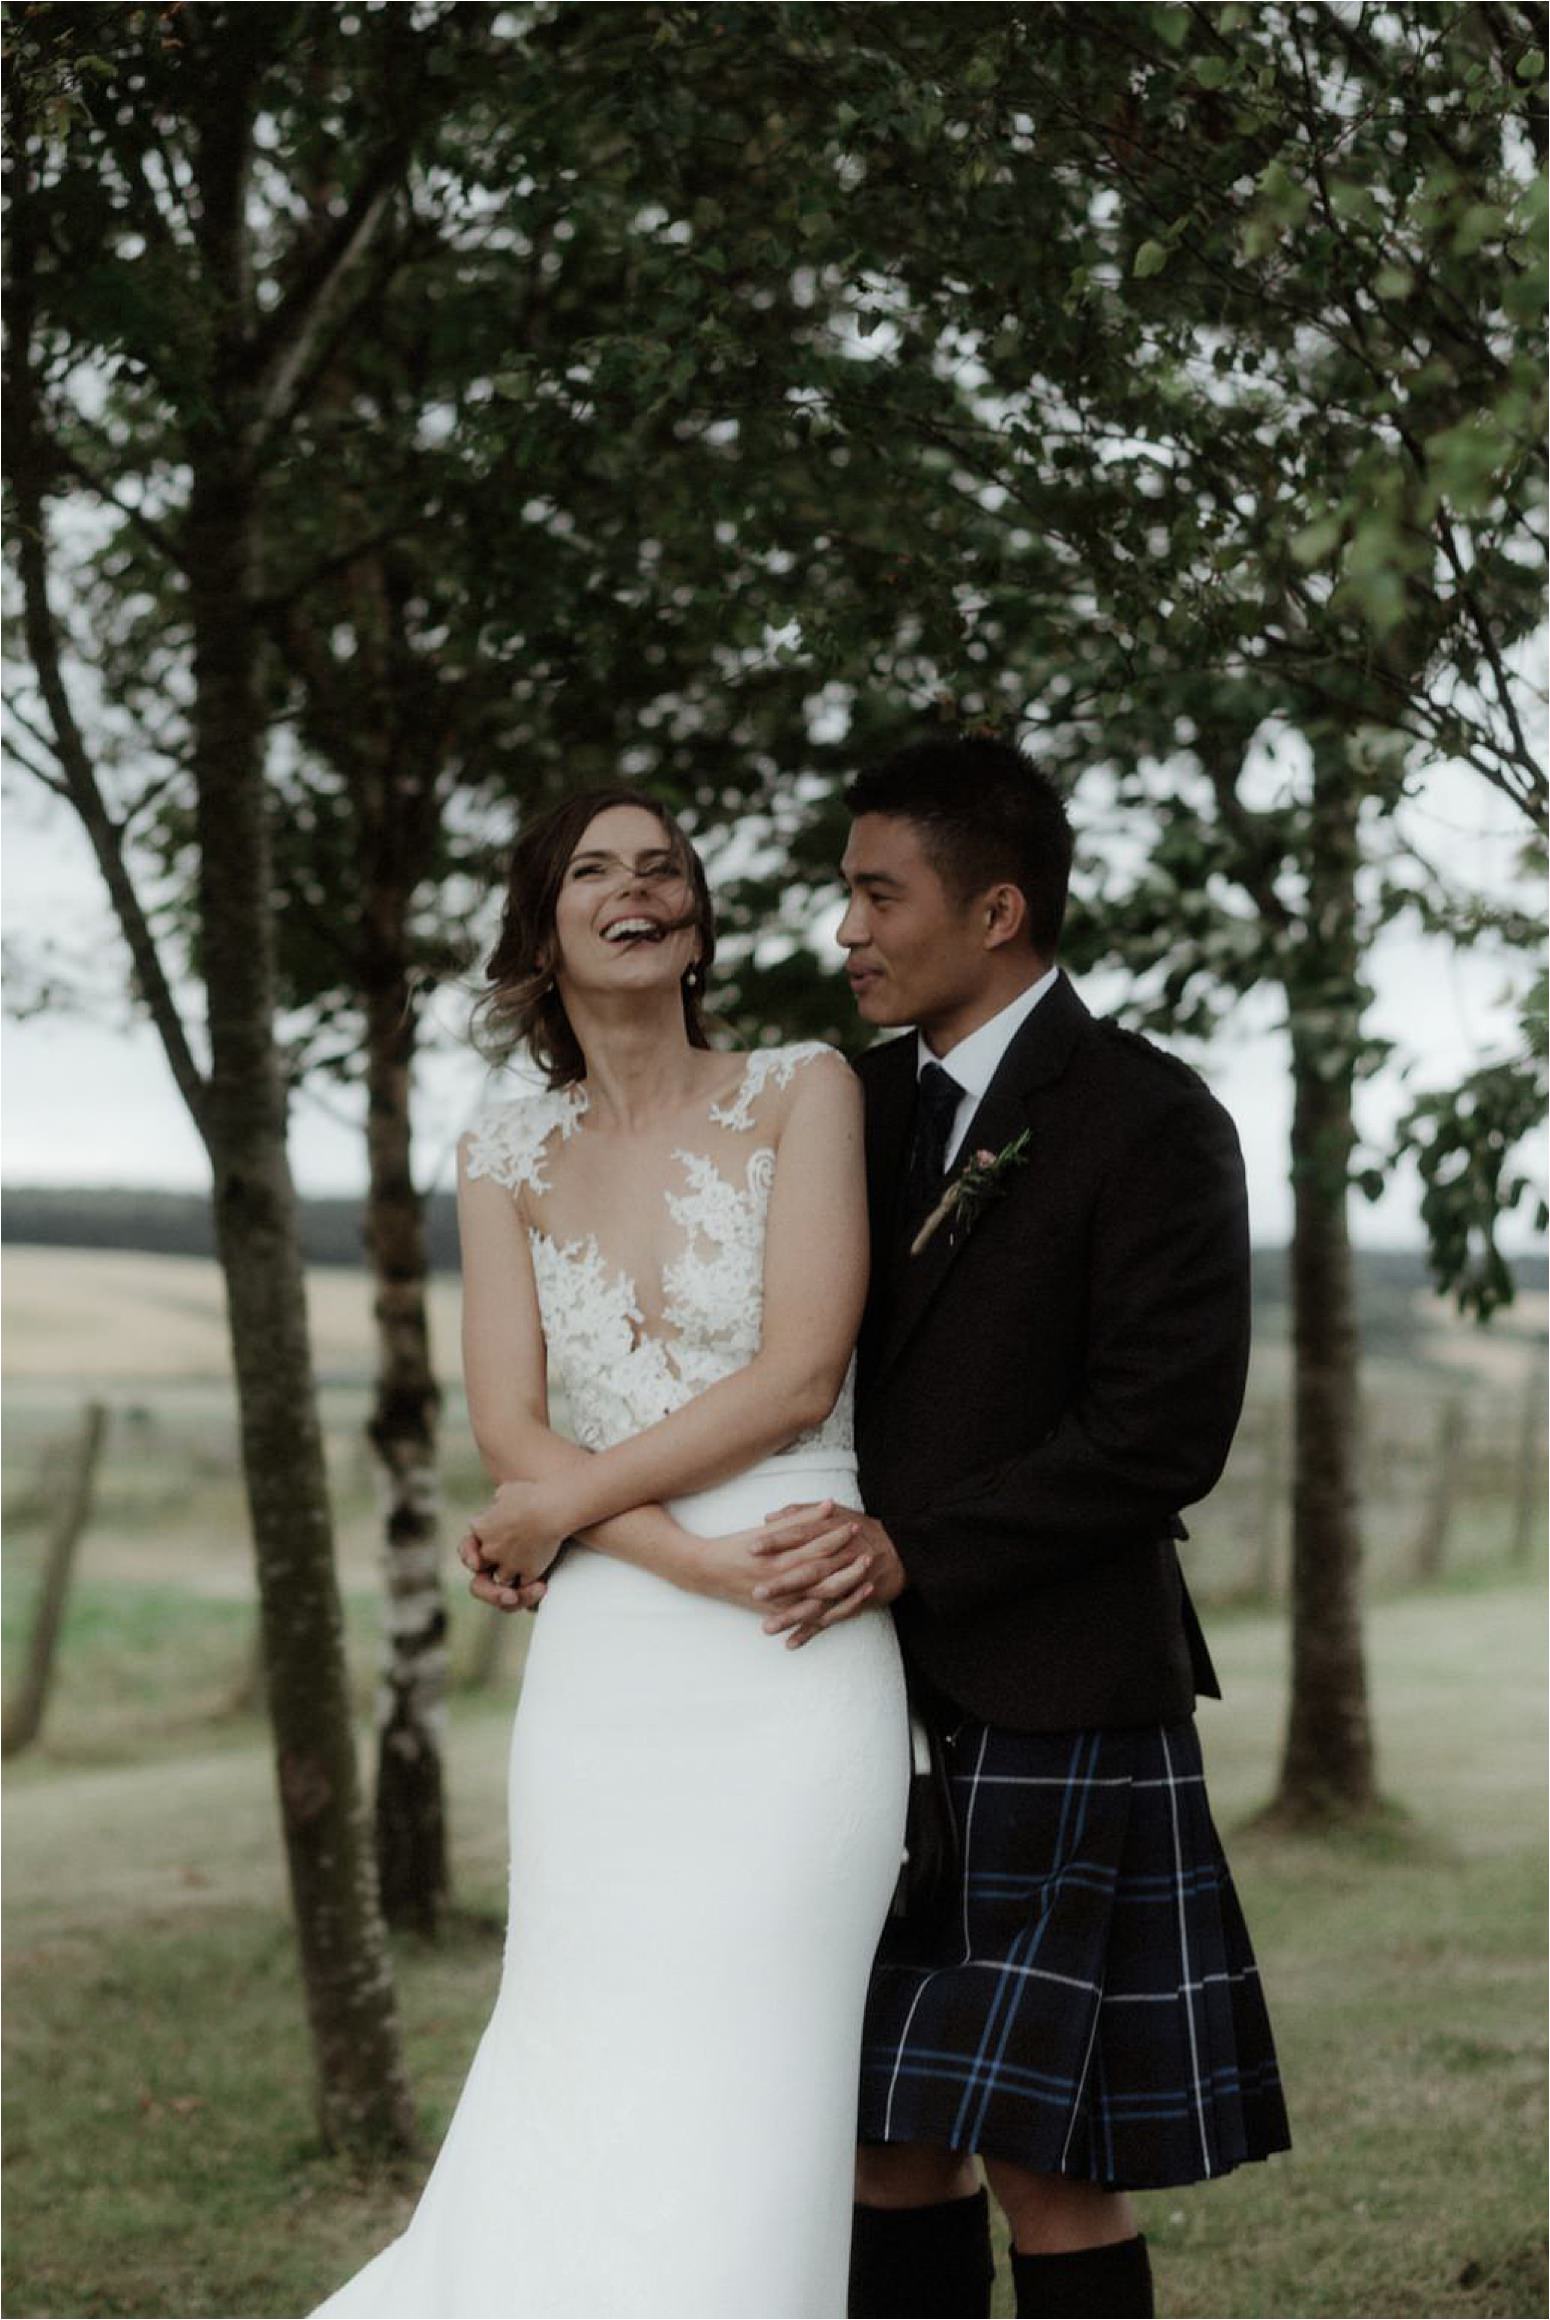 outdoor wedding in scotland at bachilton barn